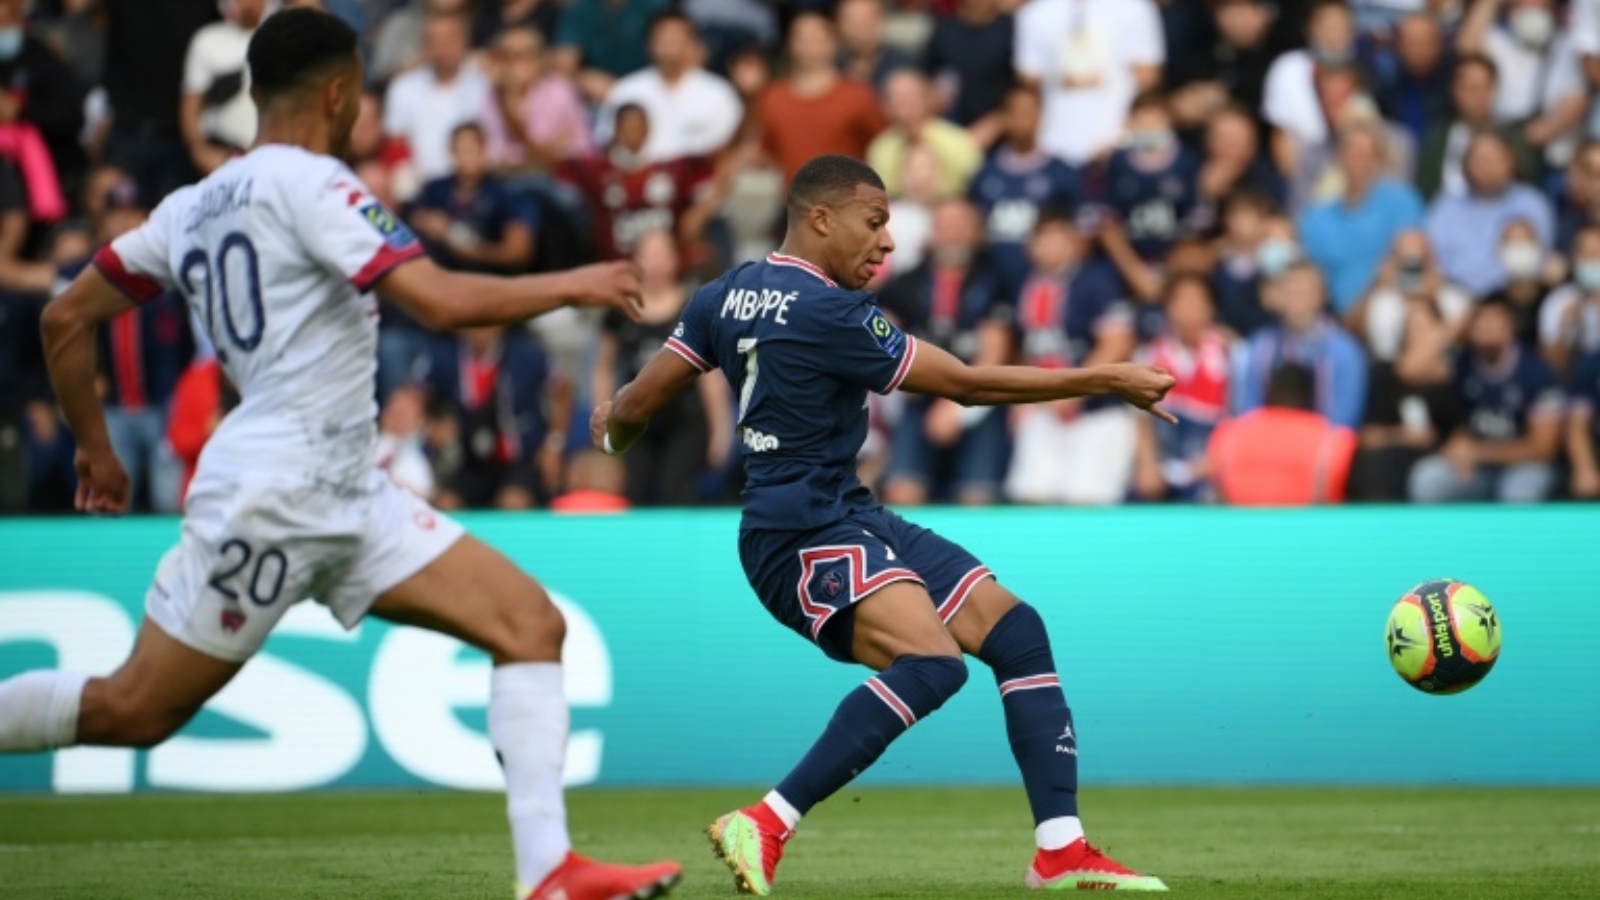 المهاجم الفرنسي مبابي في لقطة من مباراة باريس سان جرمان وضيفه كليرمون فيران. بتاريخ 11 أيلول/ سبتمبر 2021.